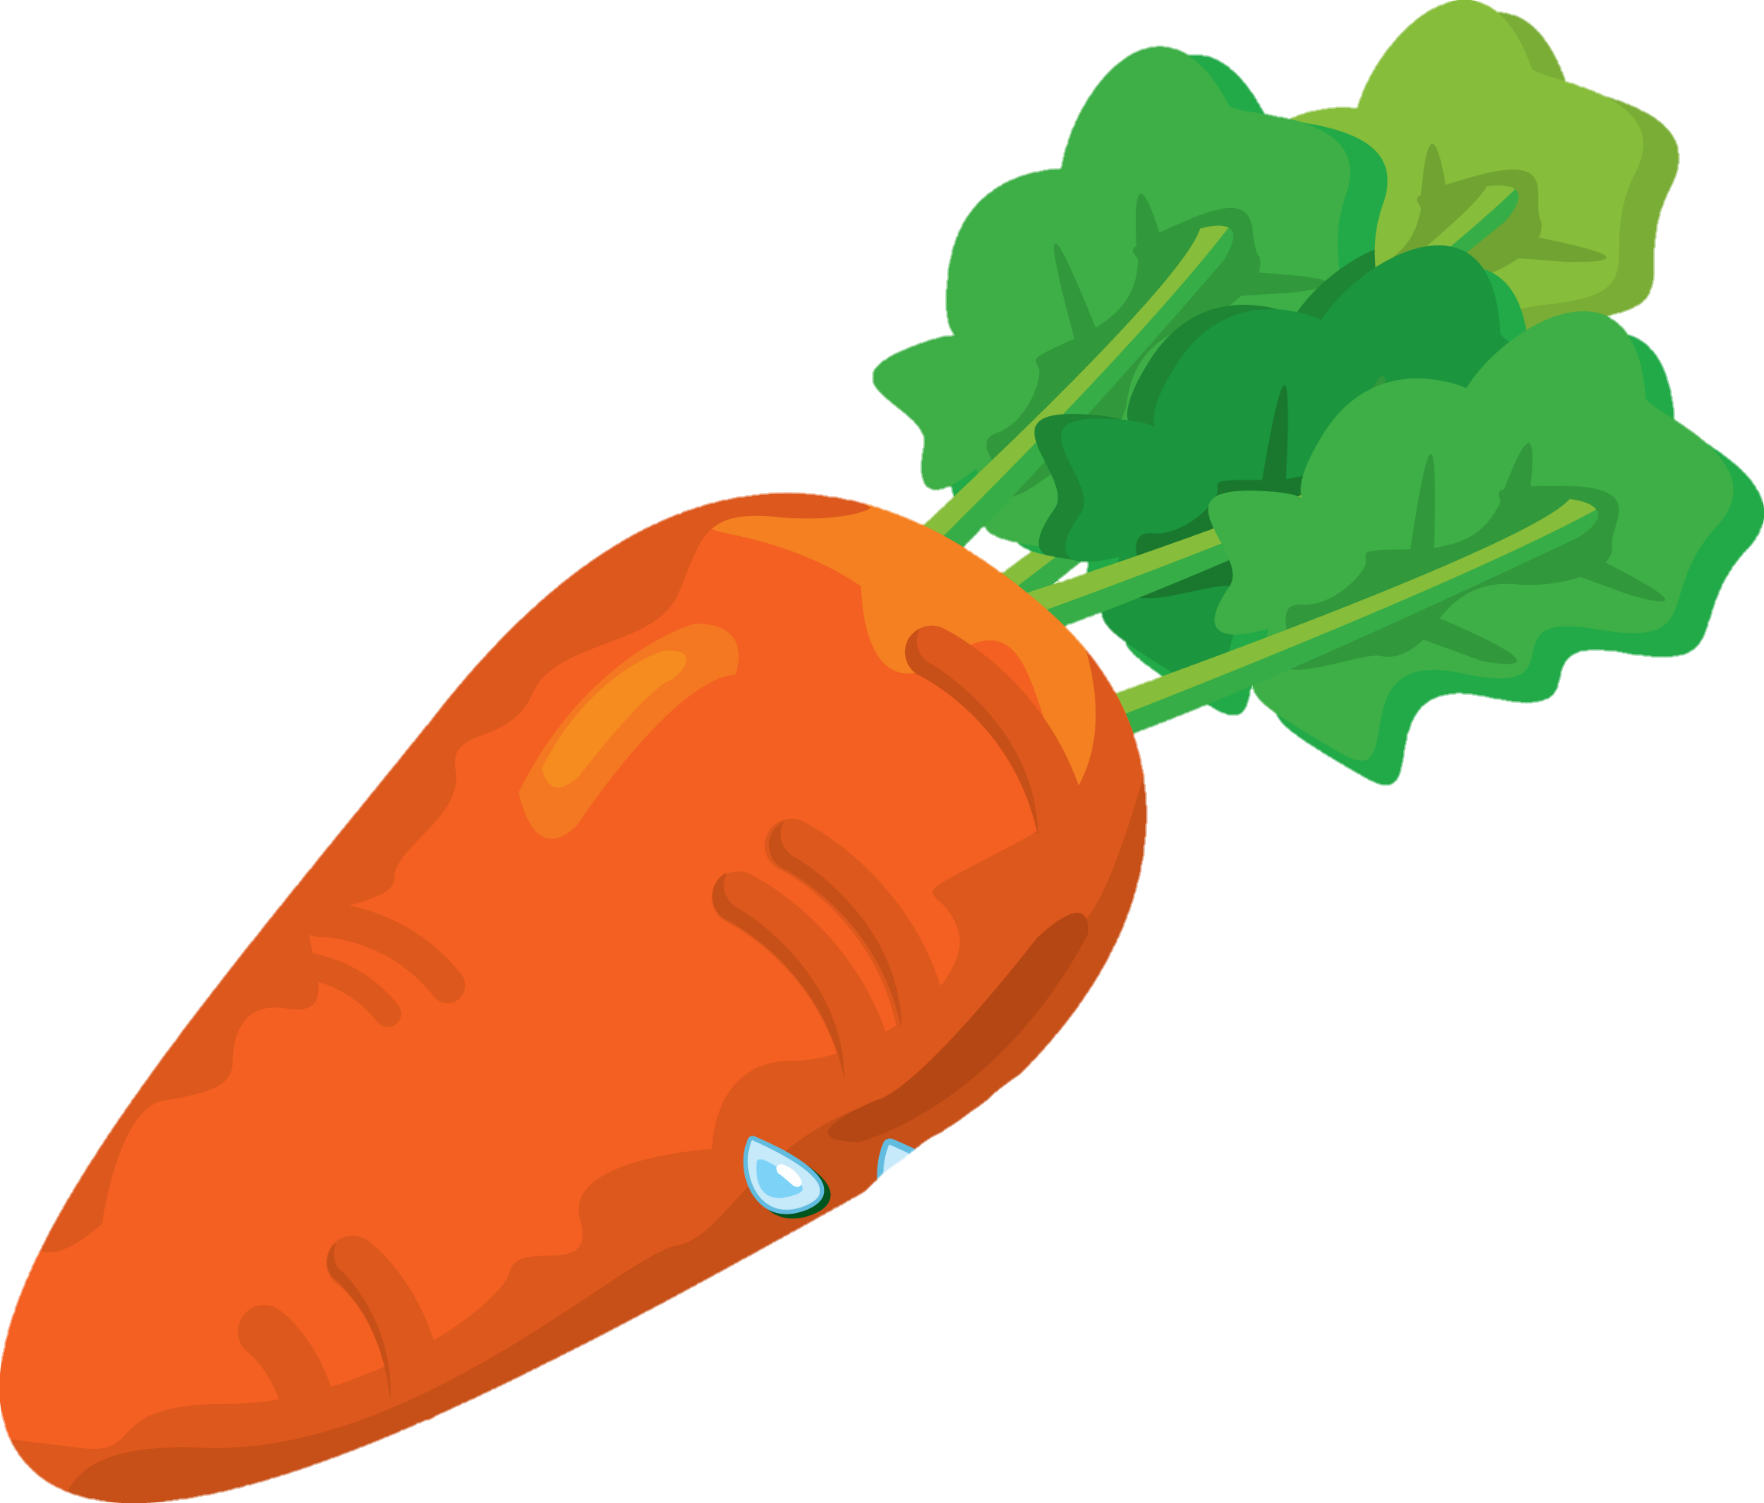 Carrot-1